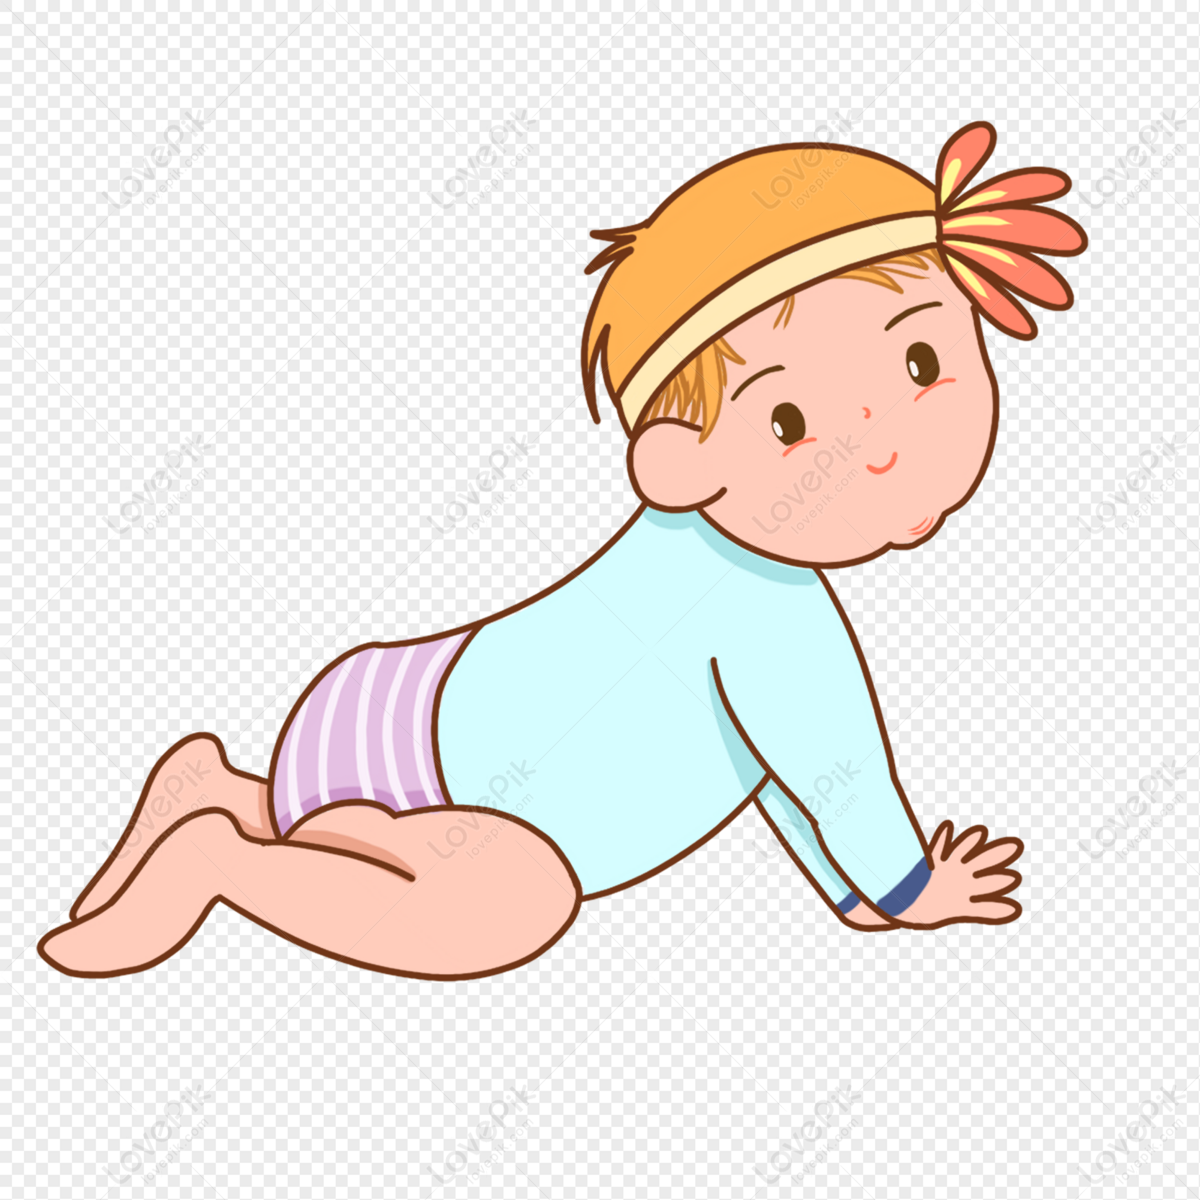 जमीन पर खेलता हुआ कार्टून पीला छोटा बाल बच्चा चित्र  डाउनलोड_ग्राफिक्सPRFचित्र आईडी401547356_PSDचित्र  प्रारूपमुफ्त की तस्वीर